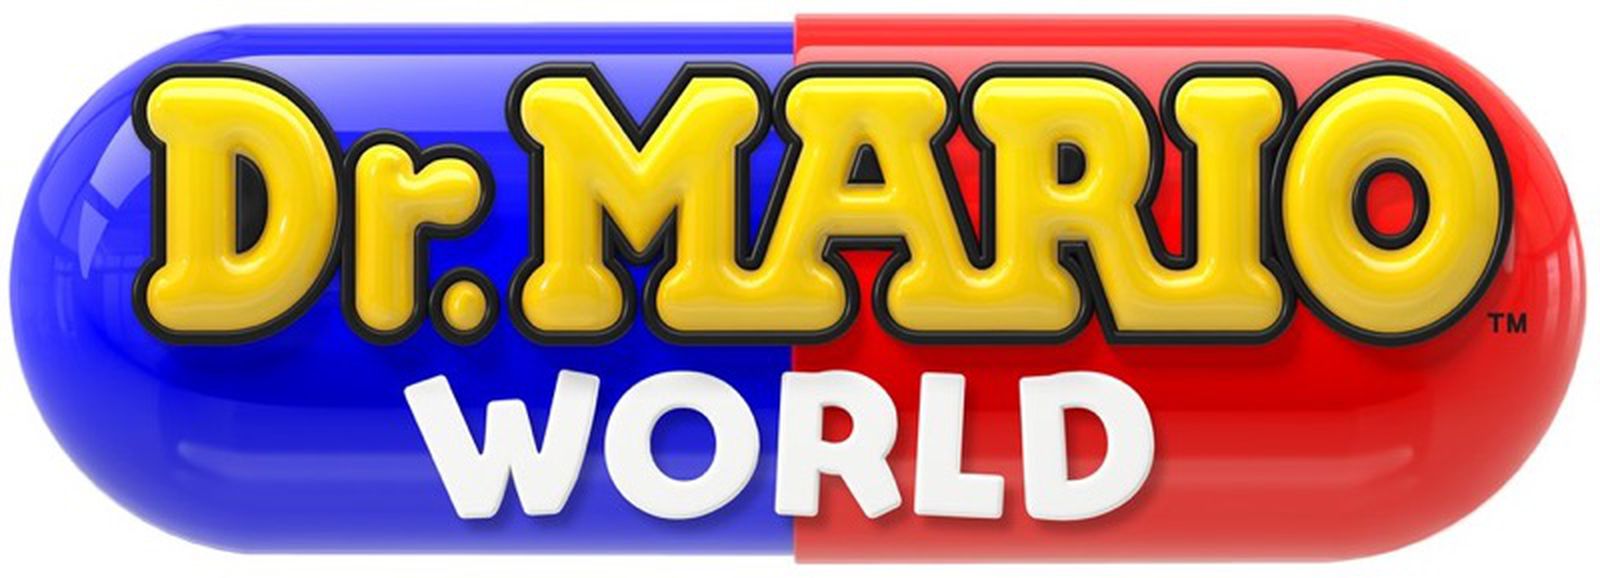 Nintendo Discontinuing Dr. Mario World iOS Game - MacRumors